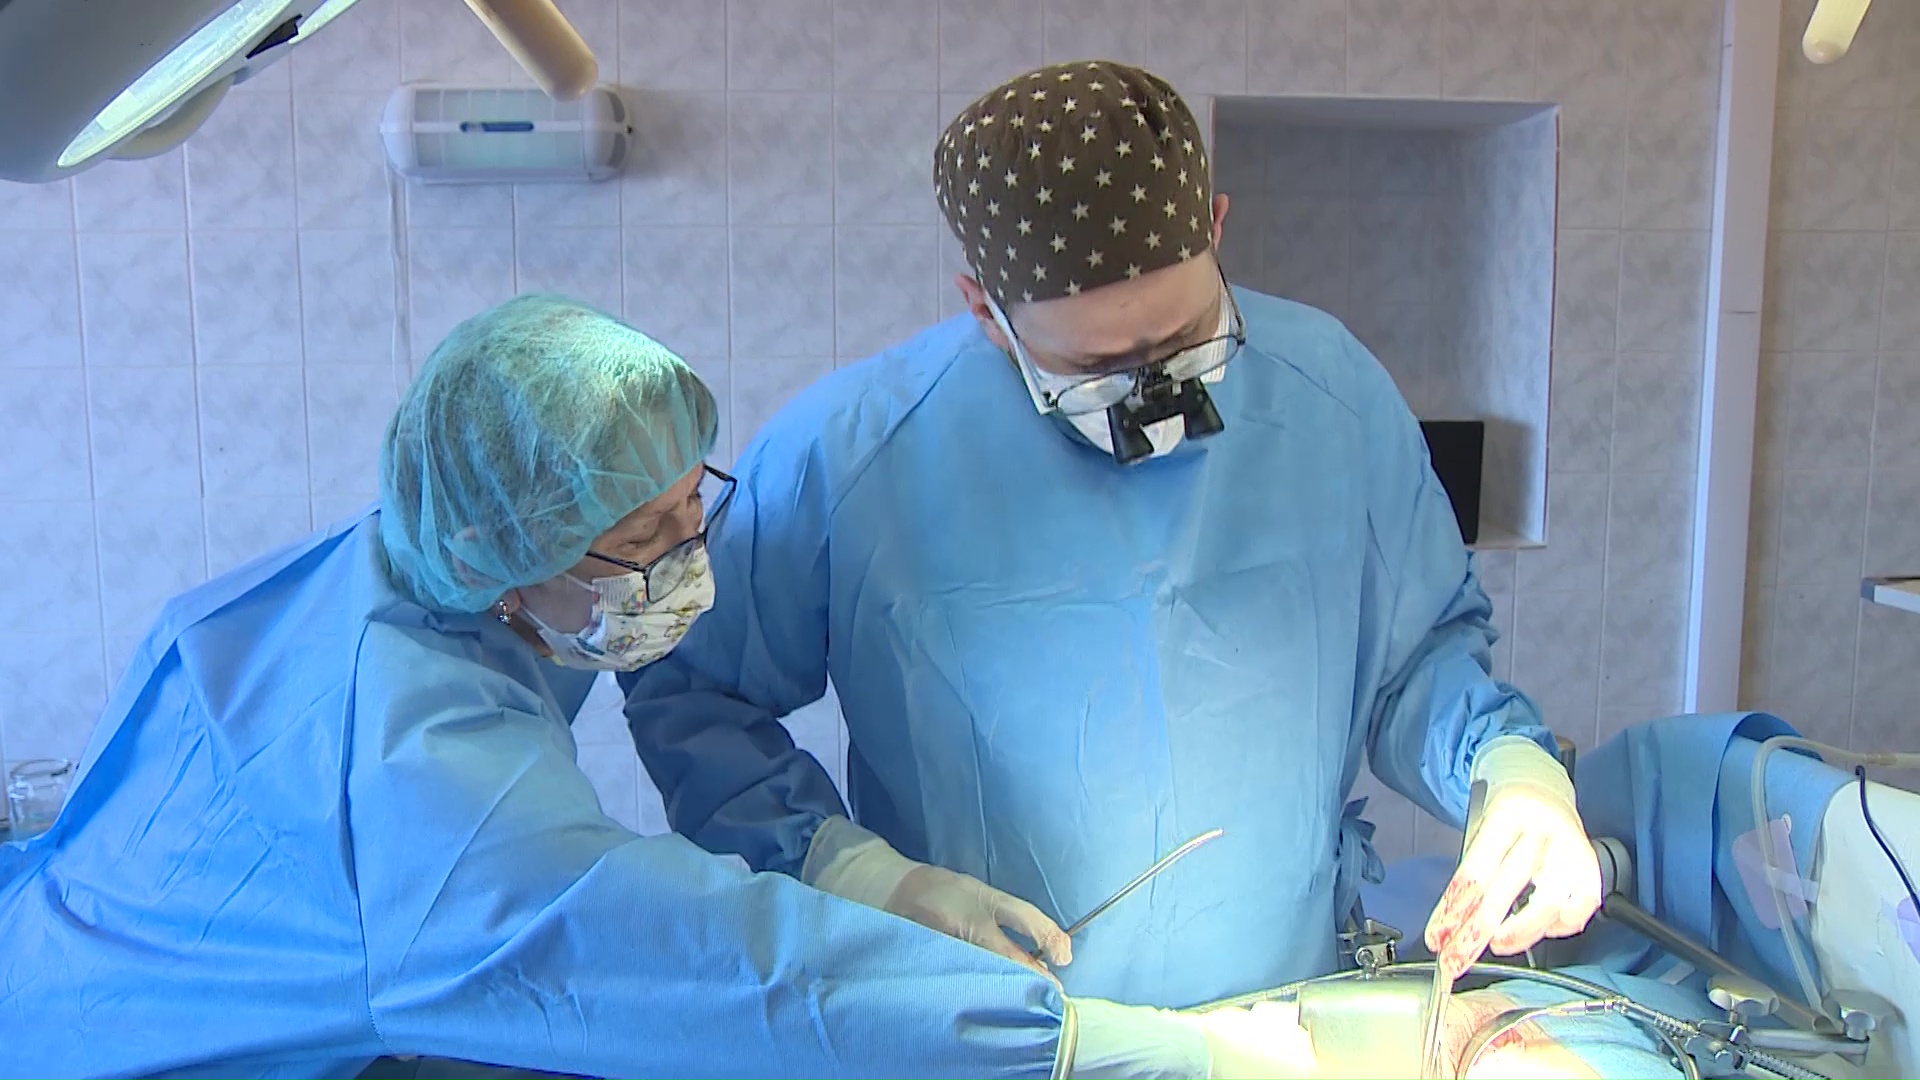 Технологический прорыв: новое оборудование в областной больнице позволило разгрузить хирургов